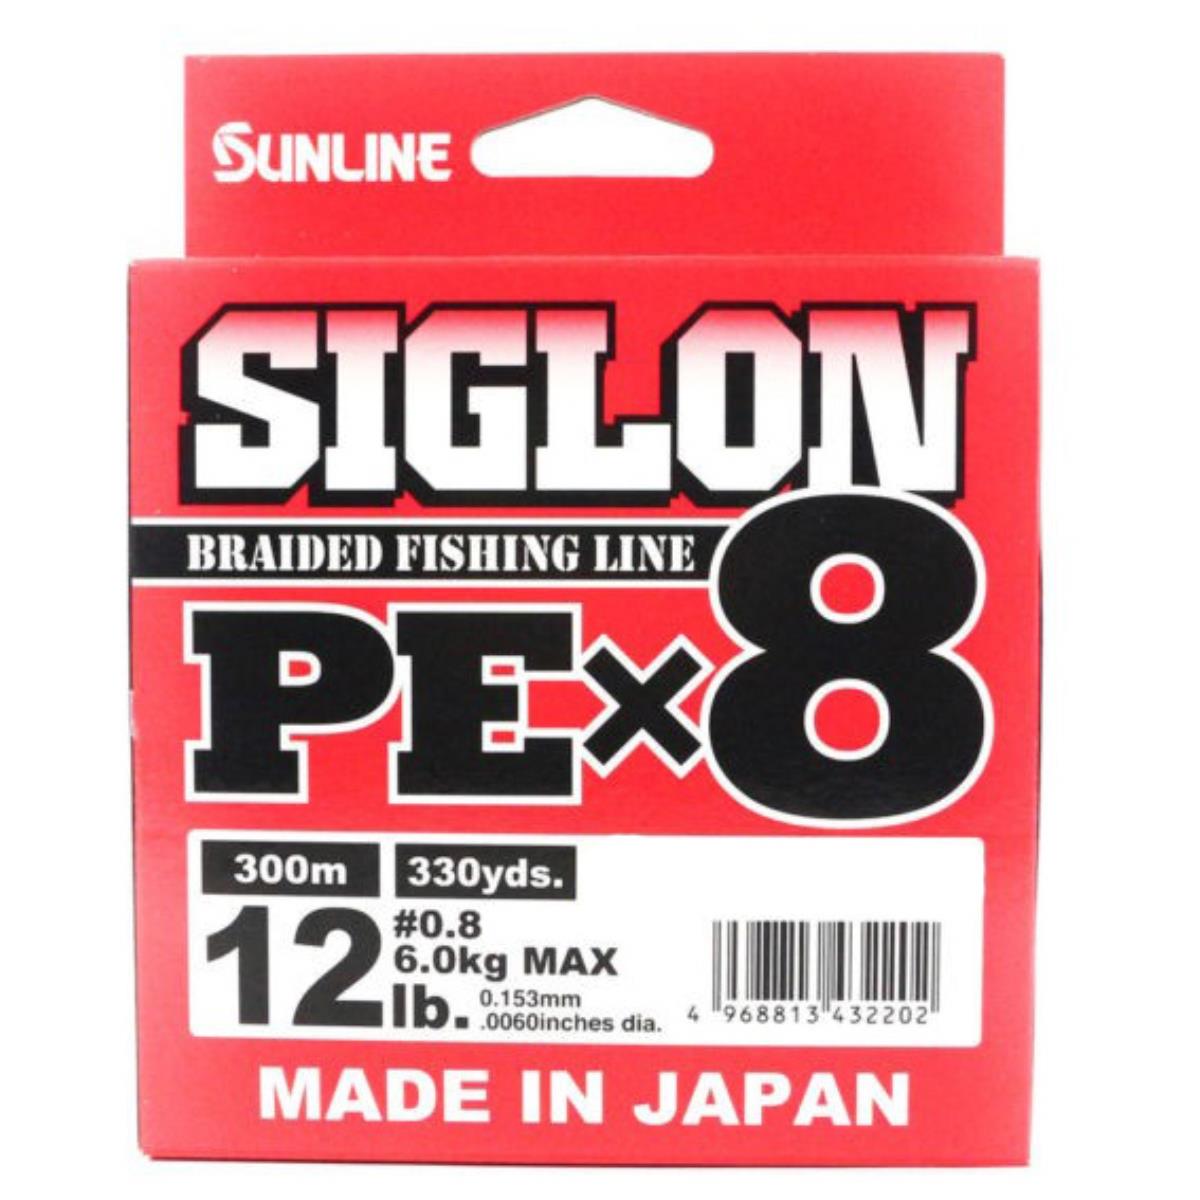 Шнур SIGLON PE×8 150M (Multikolor 5C) Sunline 189452 SIGLON PE×8 150M(Multicolor 5C) #0.8/12LB - фото 1